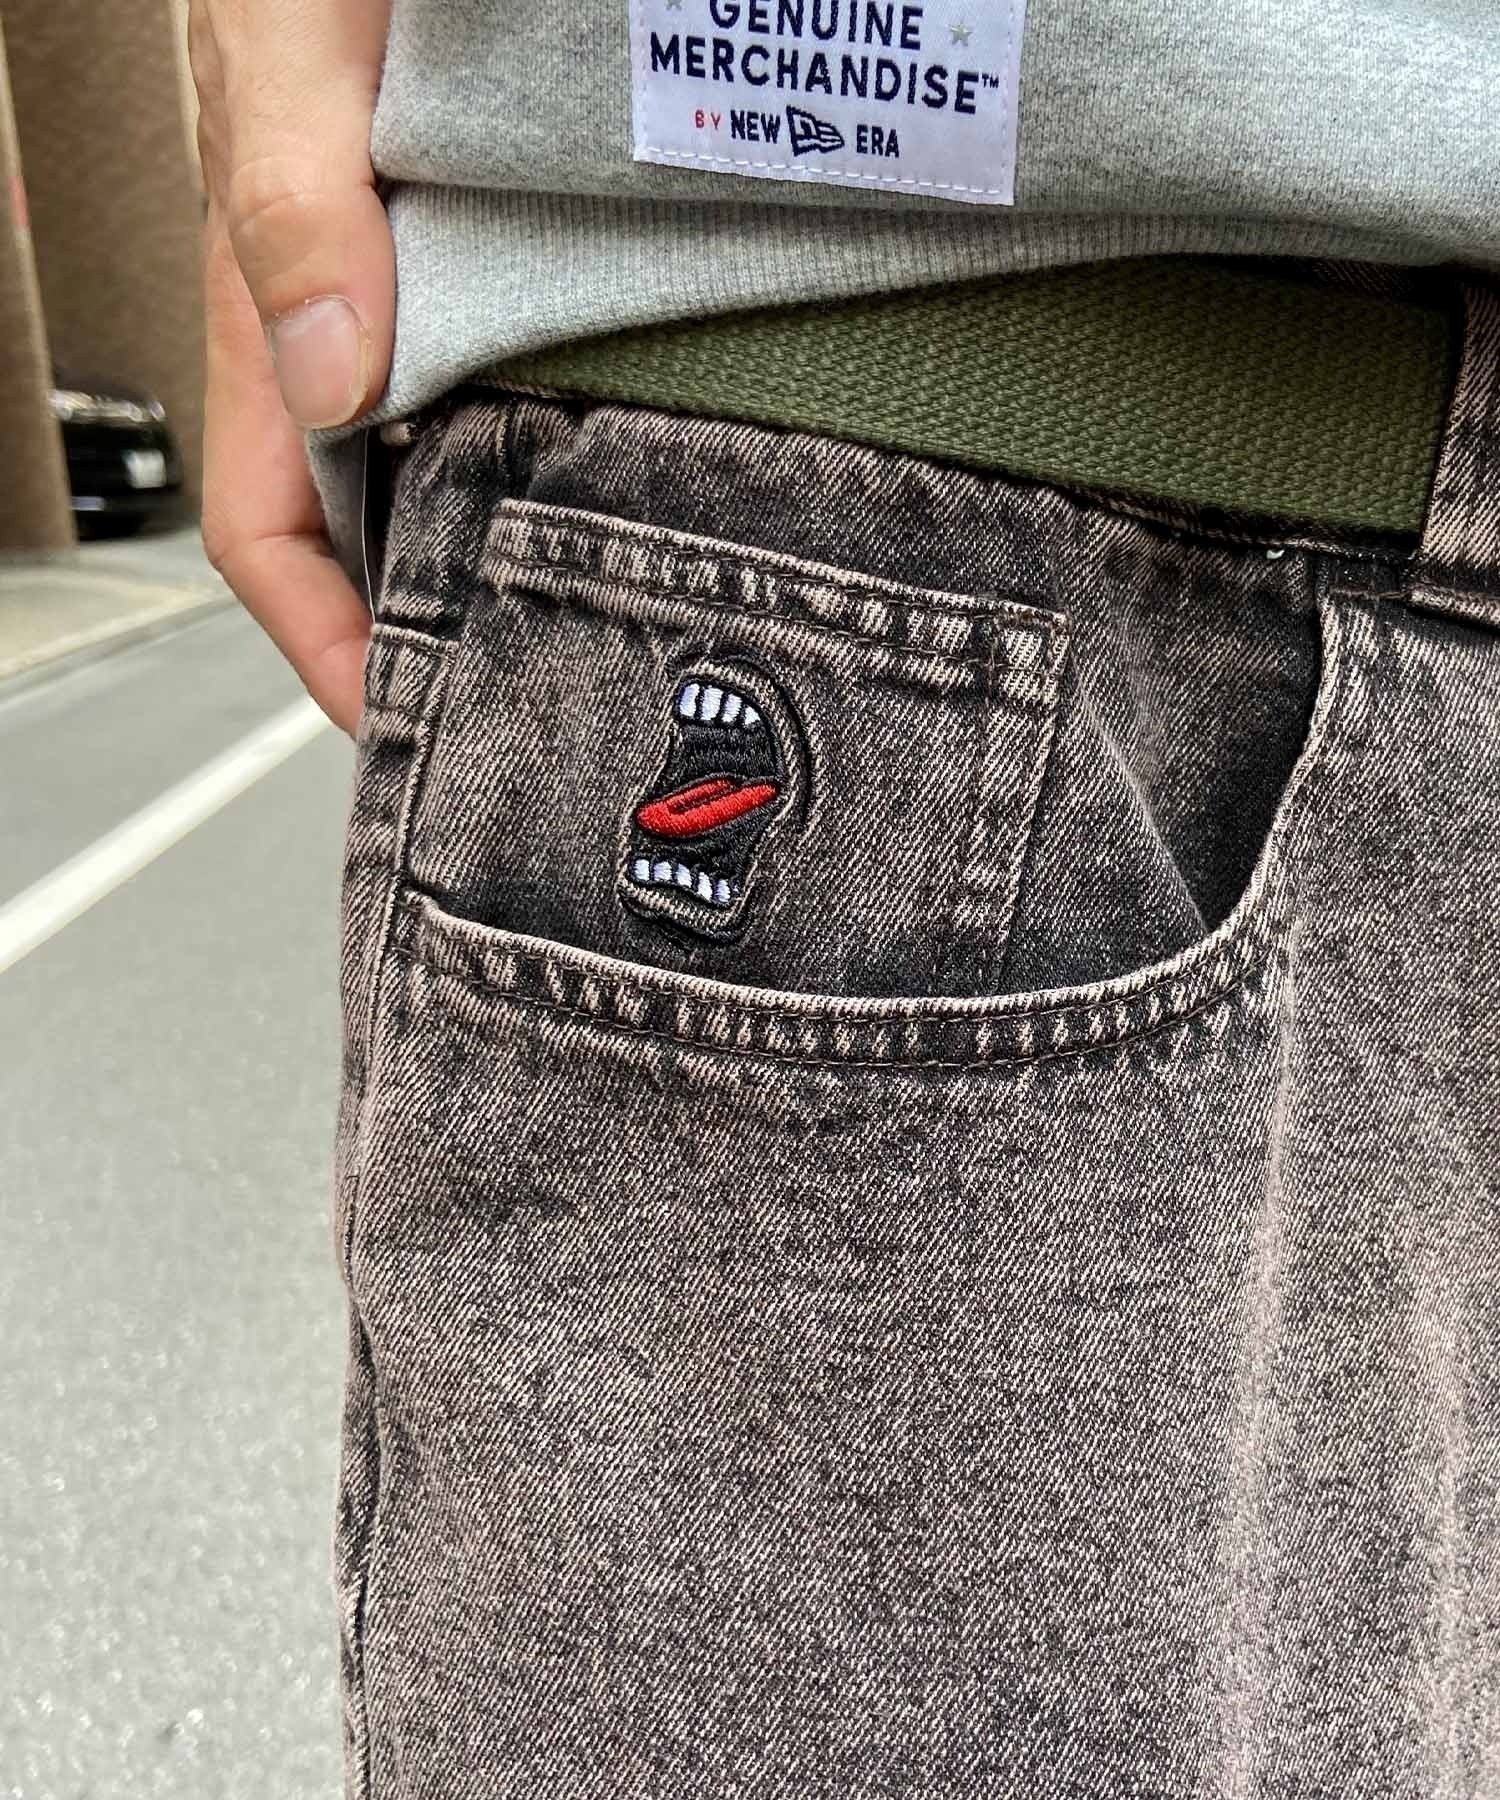 【ムラサキスポーツ限定】SANTACRUZ/サンタクルーズ Big Mouth Pigment Jeans メンズ ロングパンツ 502233501(GREEN-M)